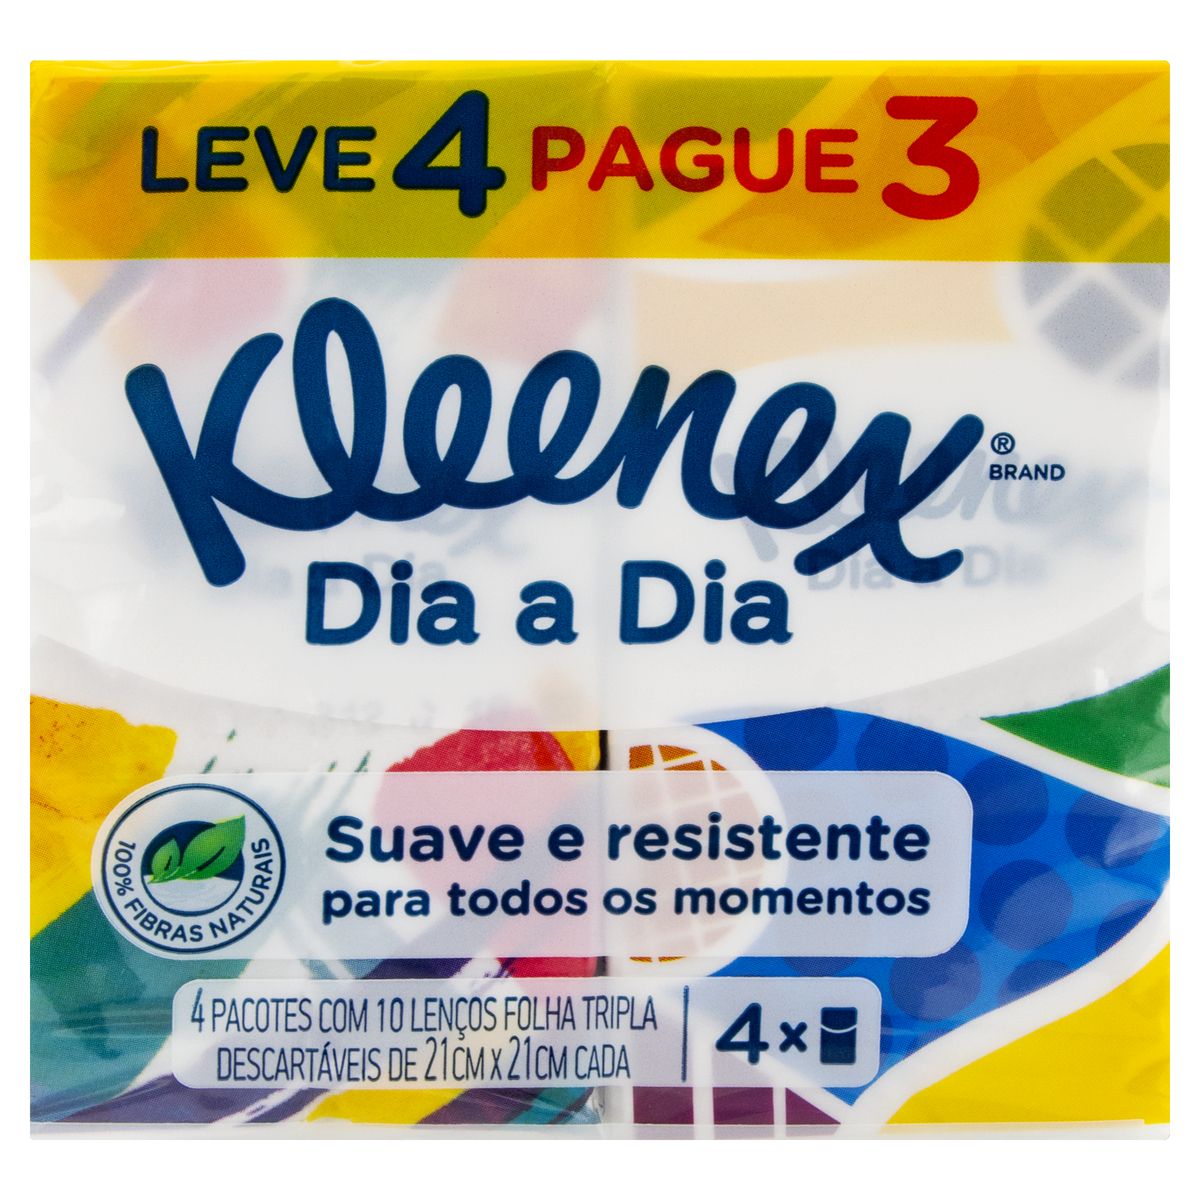 Pack Lenço de Papel Folha Tripla Suave Kleenex Dia a Dia Pacote Leve 4 Pague 3 Unidades